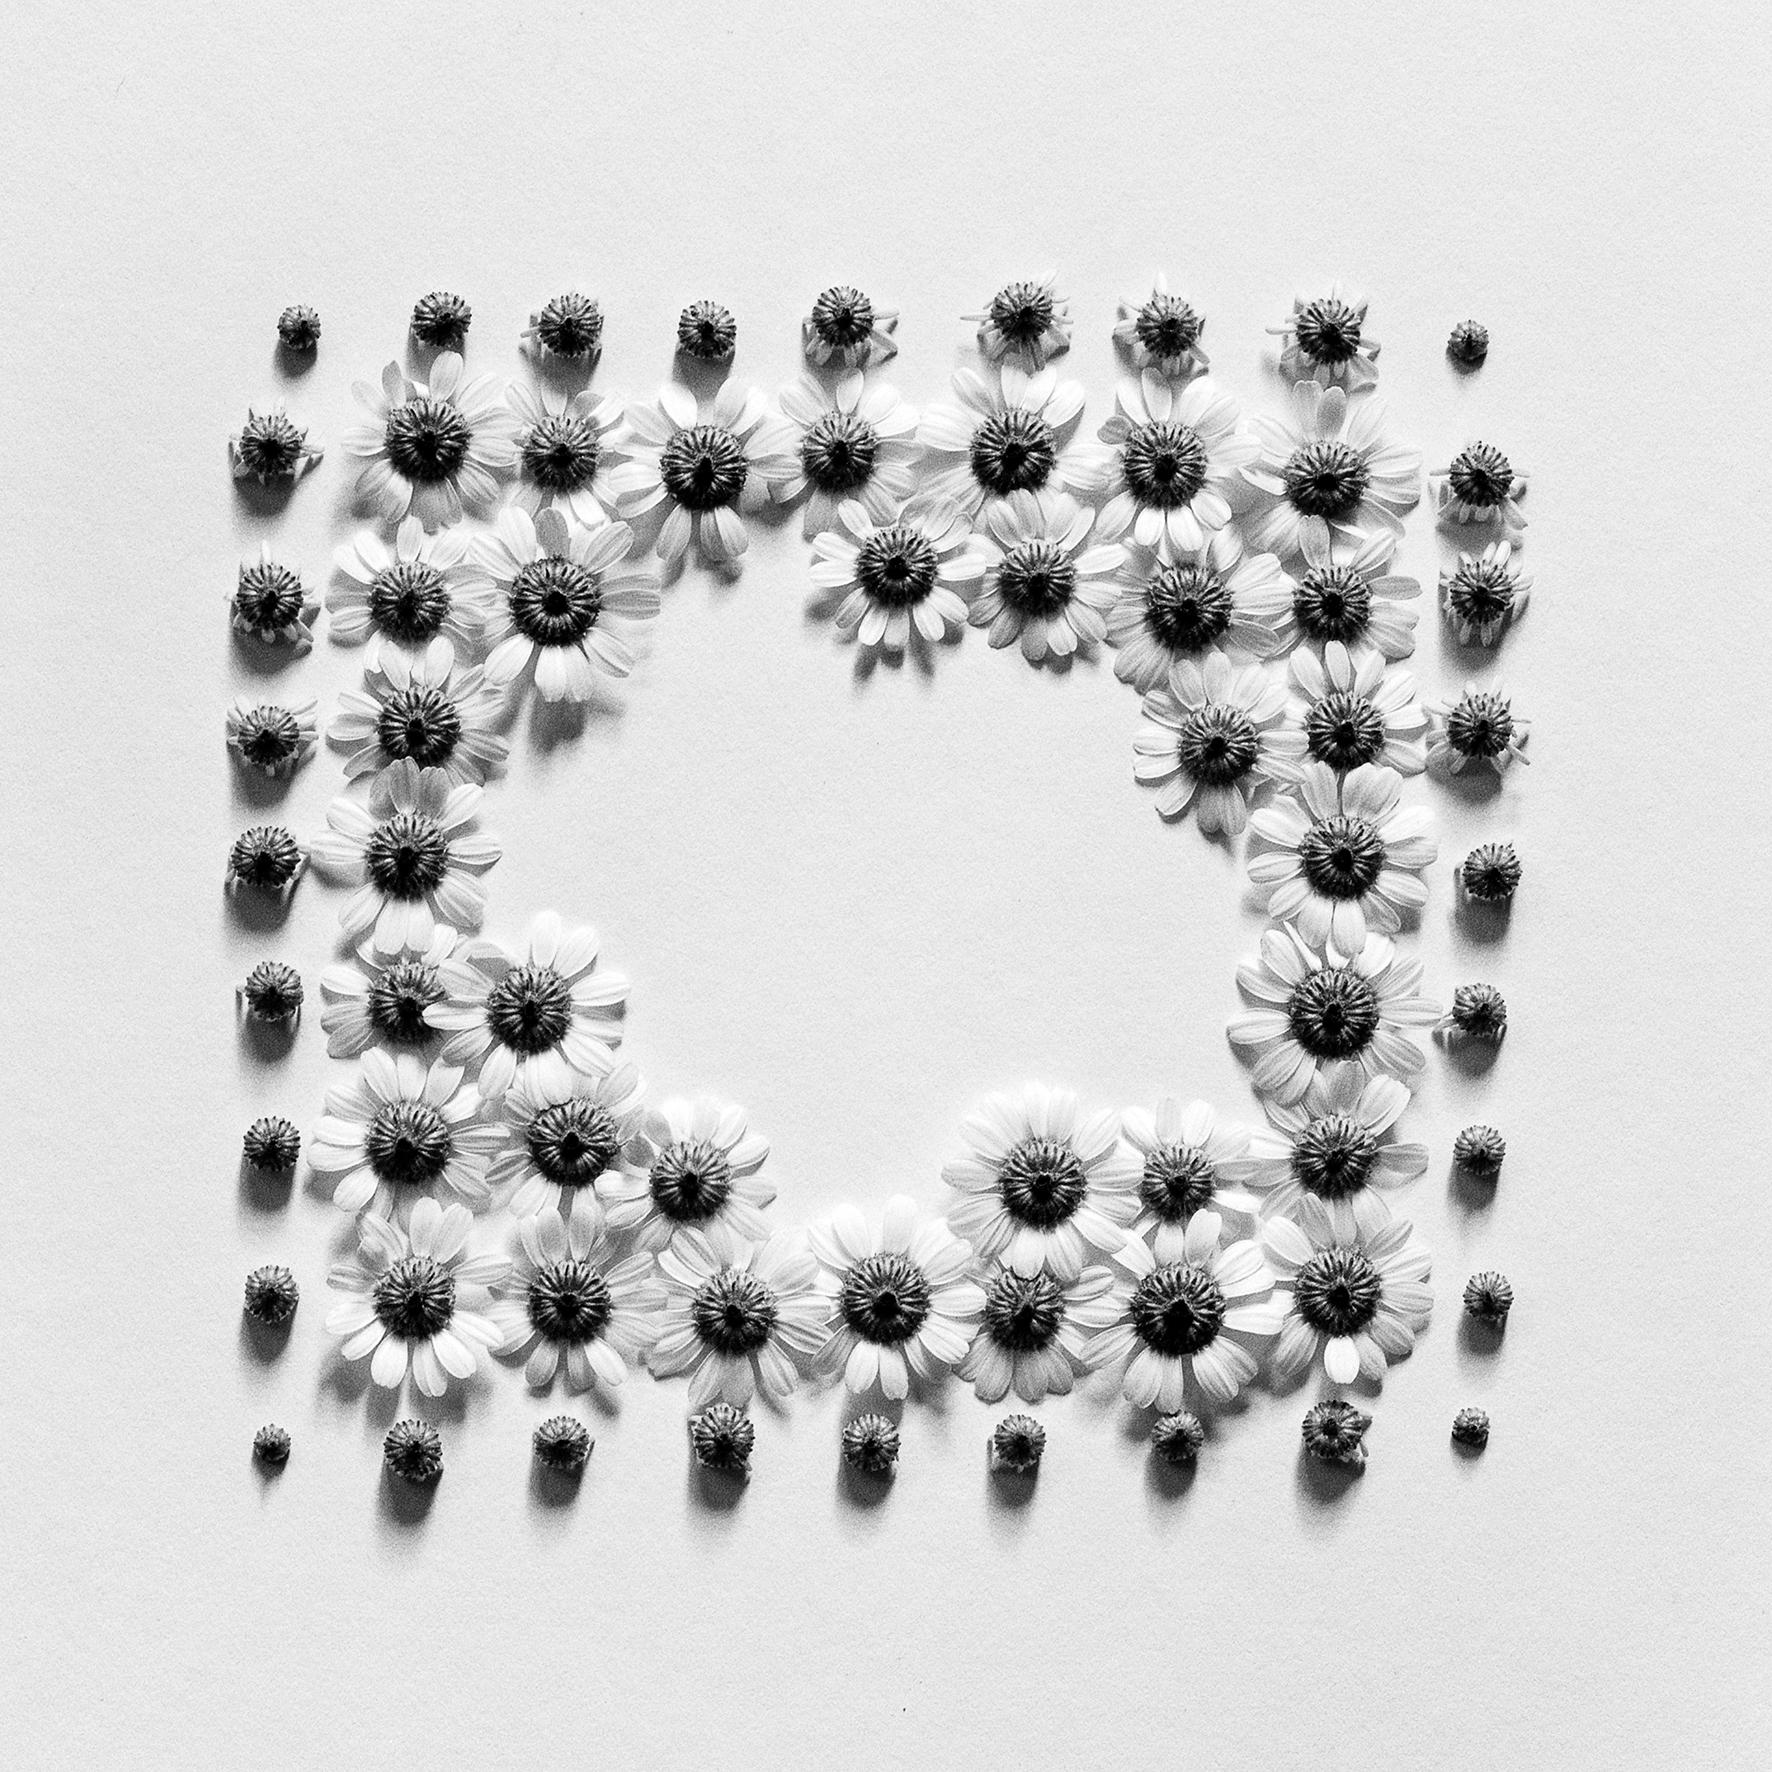 Ramunės - abstrakte analoge Schwarz-Weiß-Blumenfotografie, 2 von 5